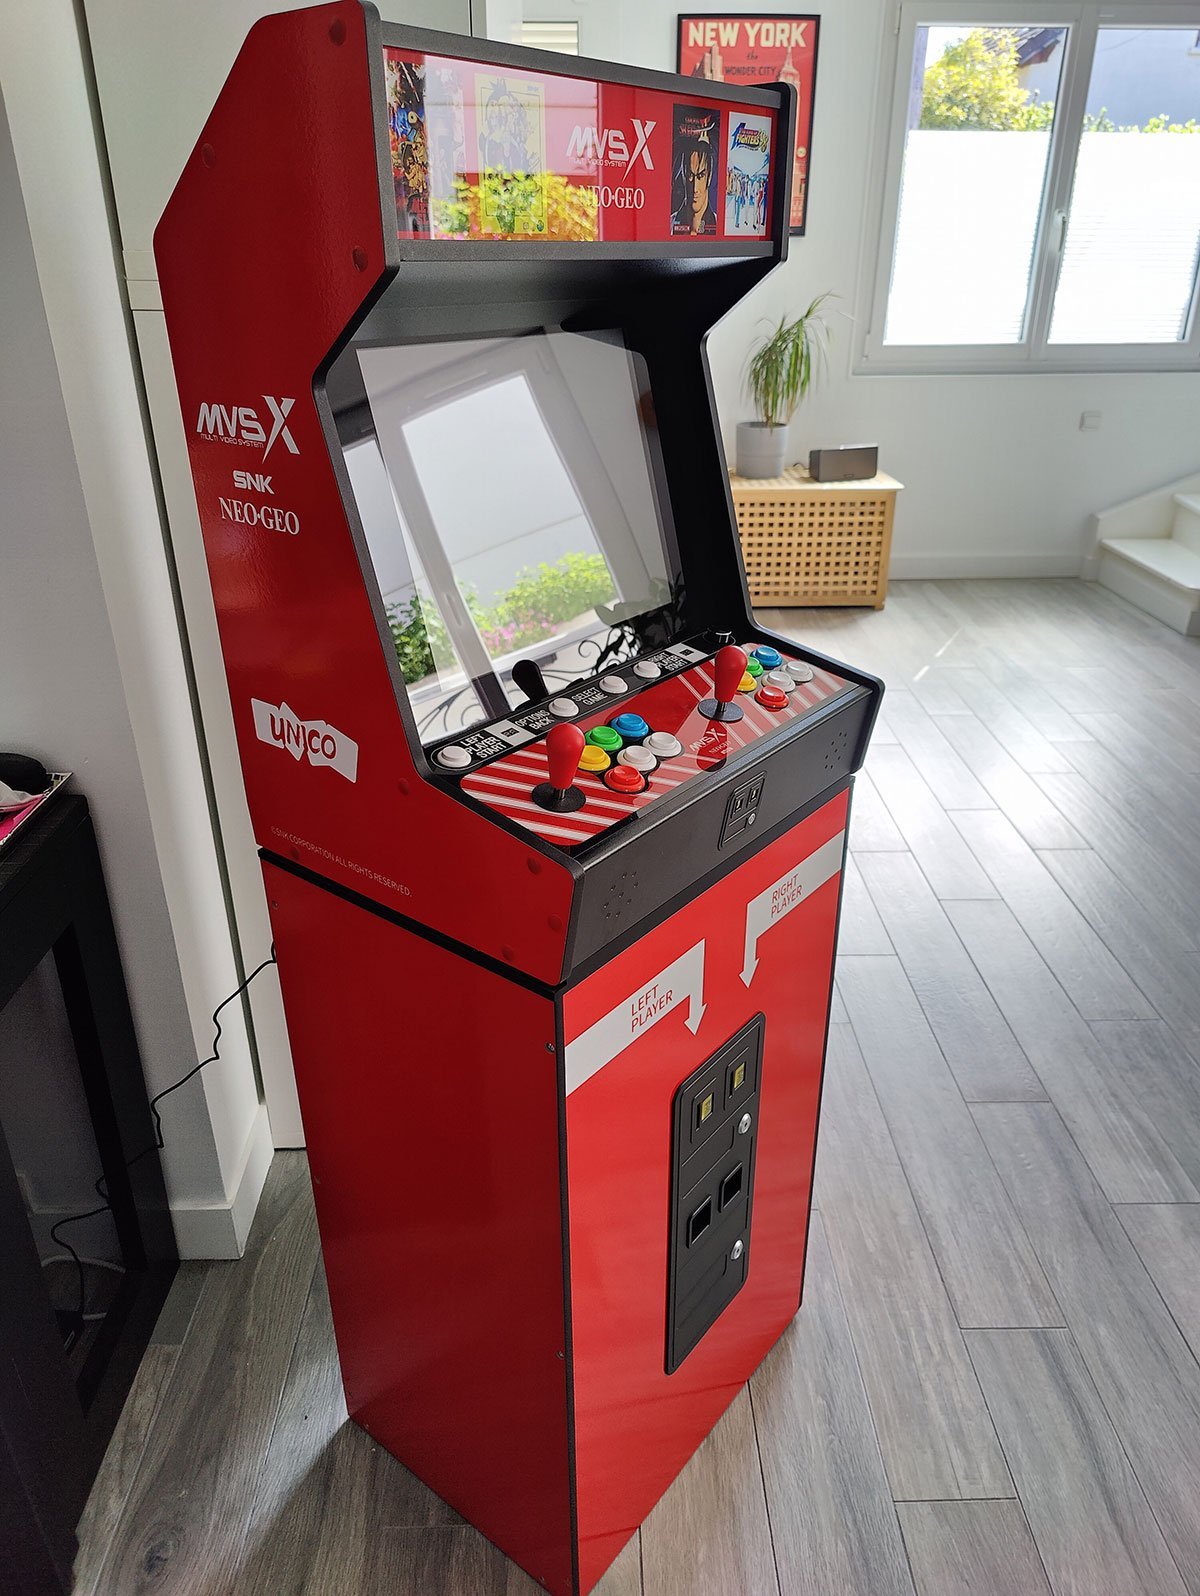 snk arcade machine